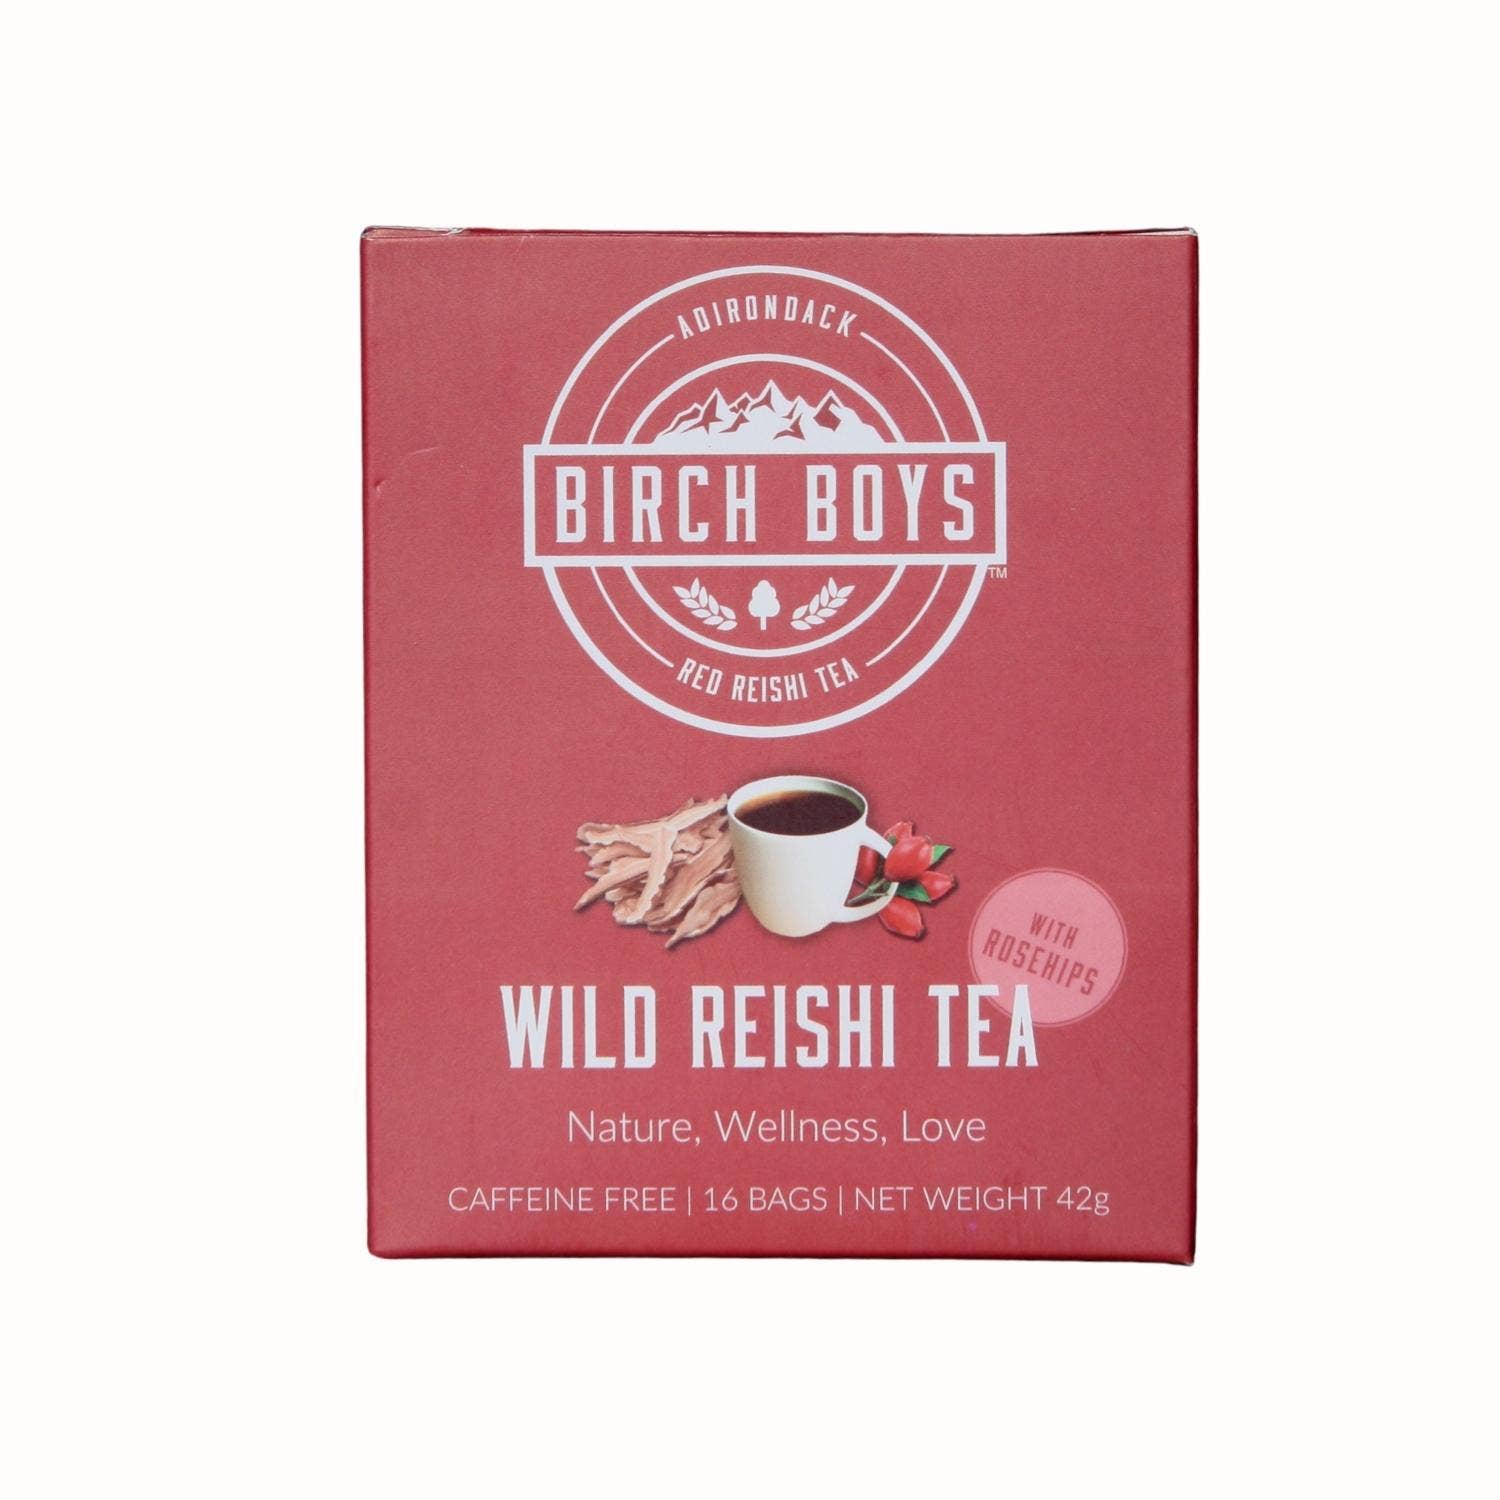 Wild Reishi Tea